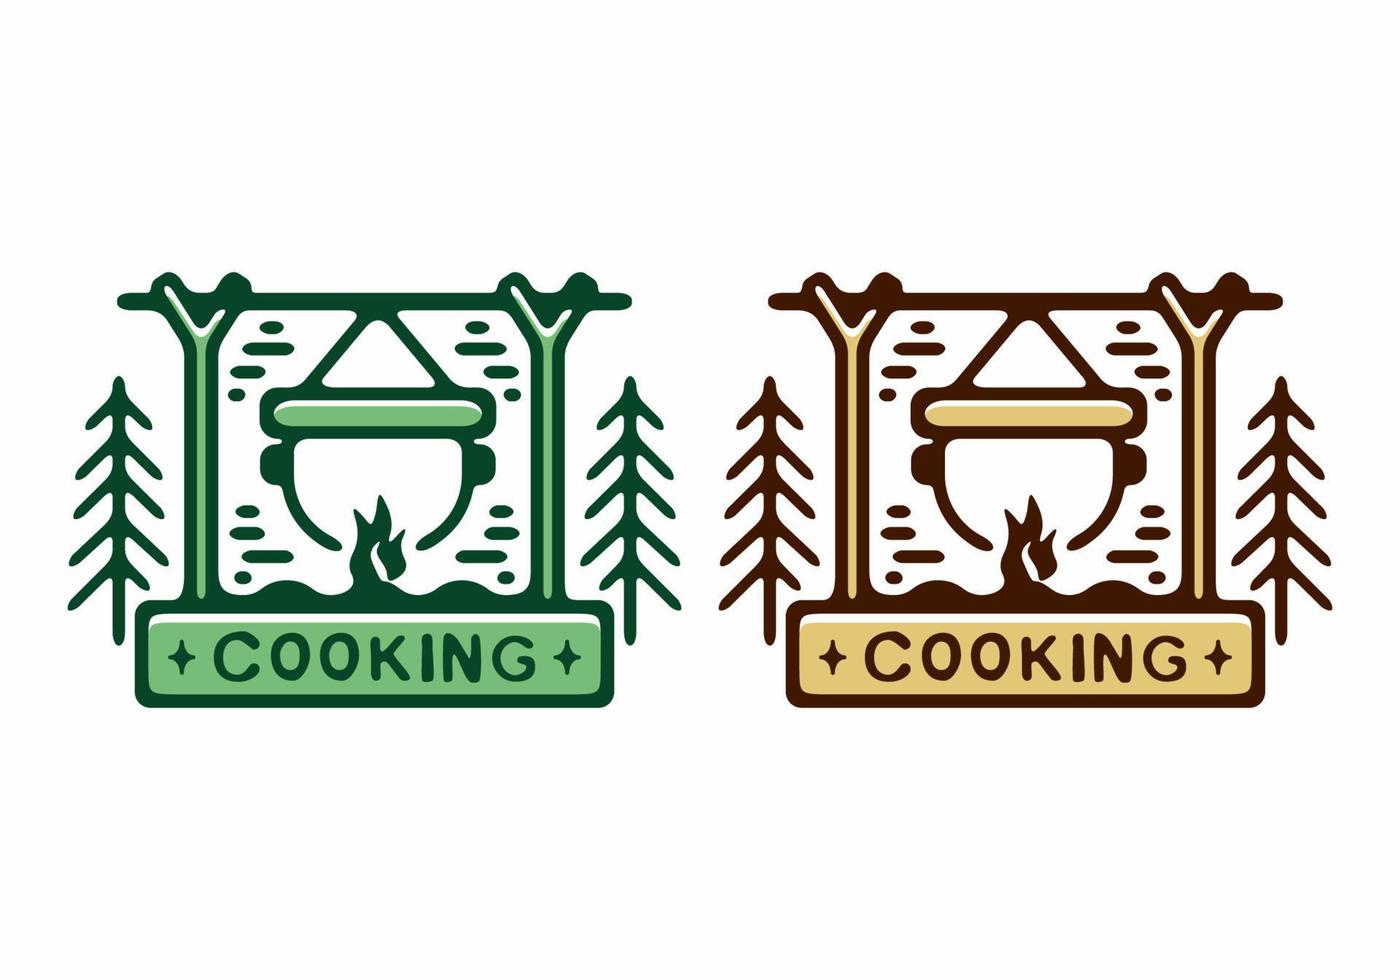 couleur marron et verte de l'illustration de l'insigne de cuisine vecteur